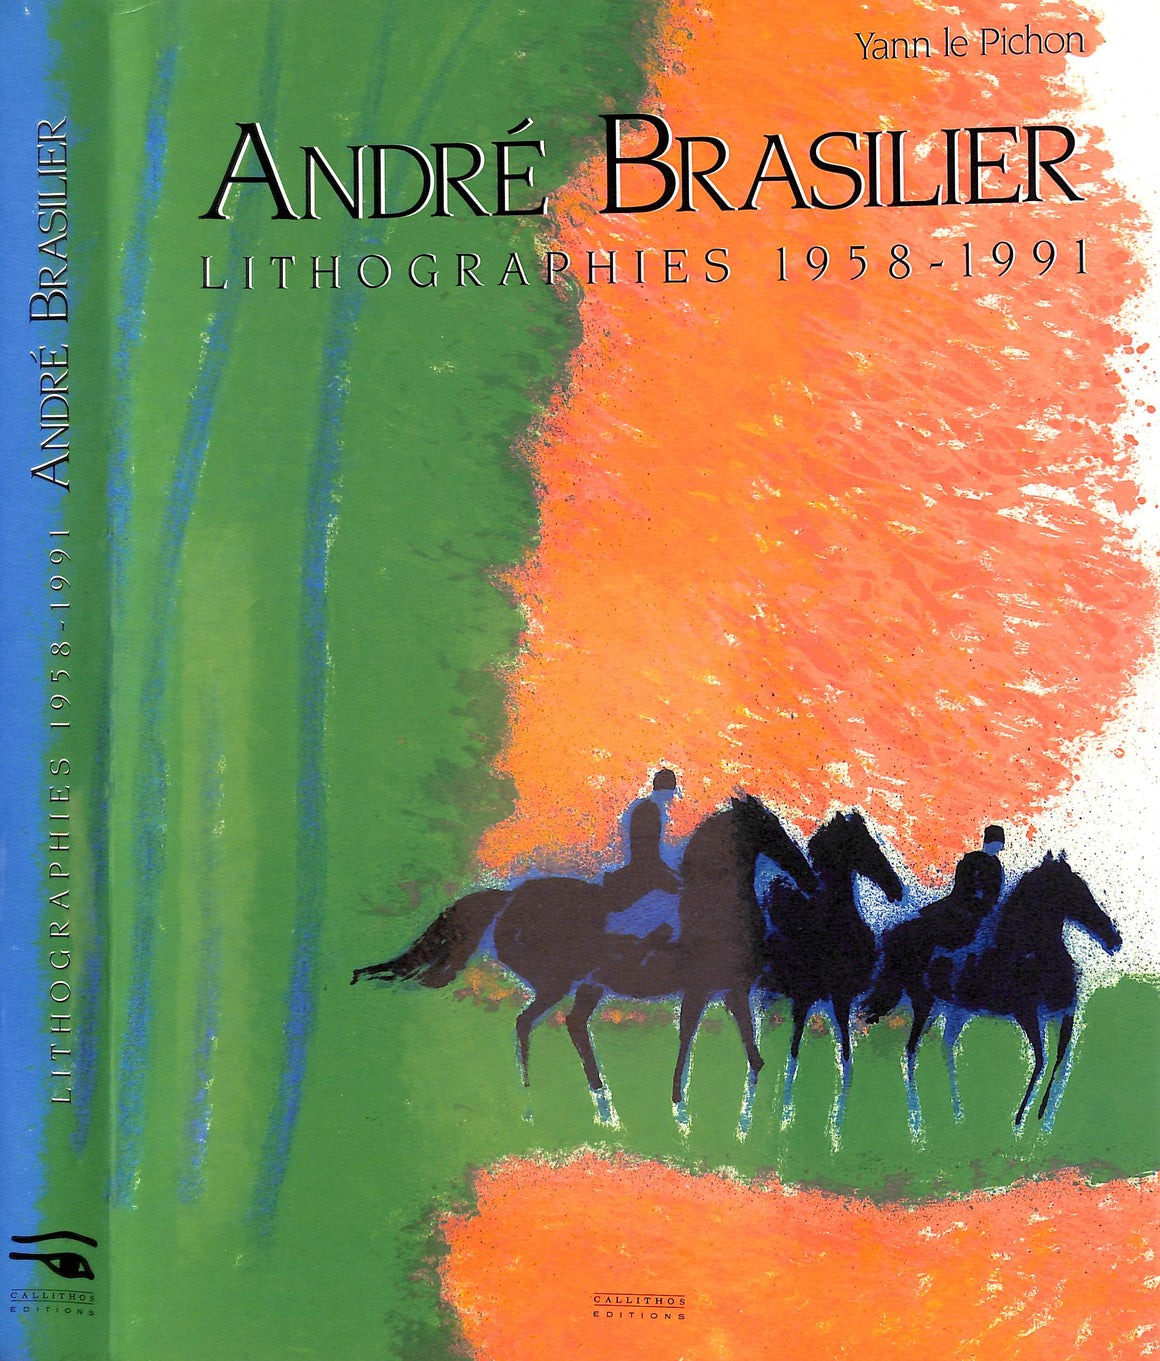 "Andre Brasilier: Lithographies 1958-1991" LE PICHON, Yann